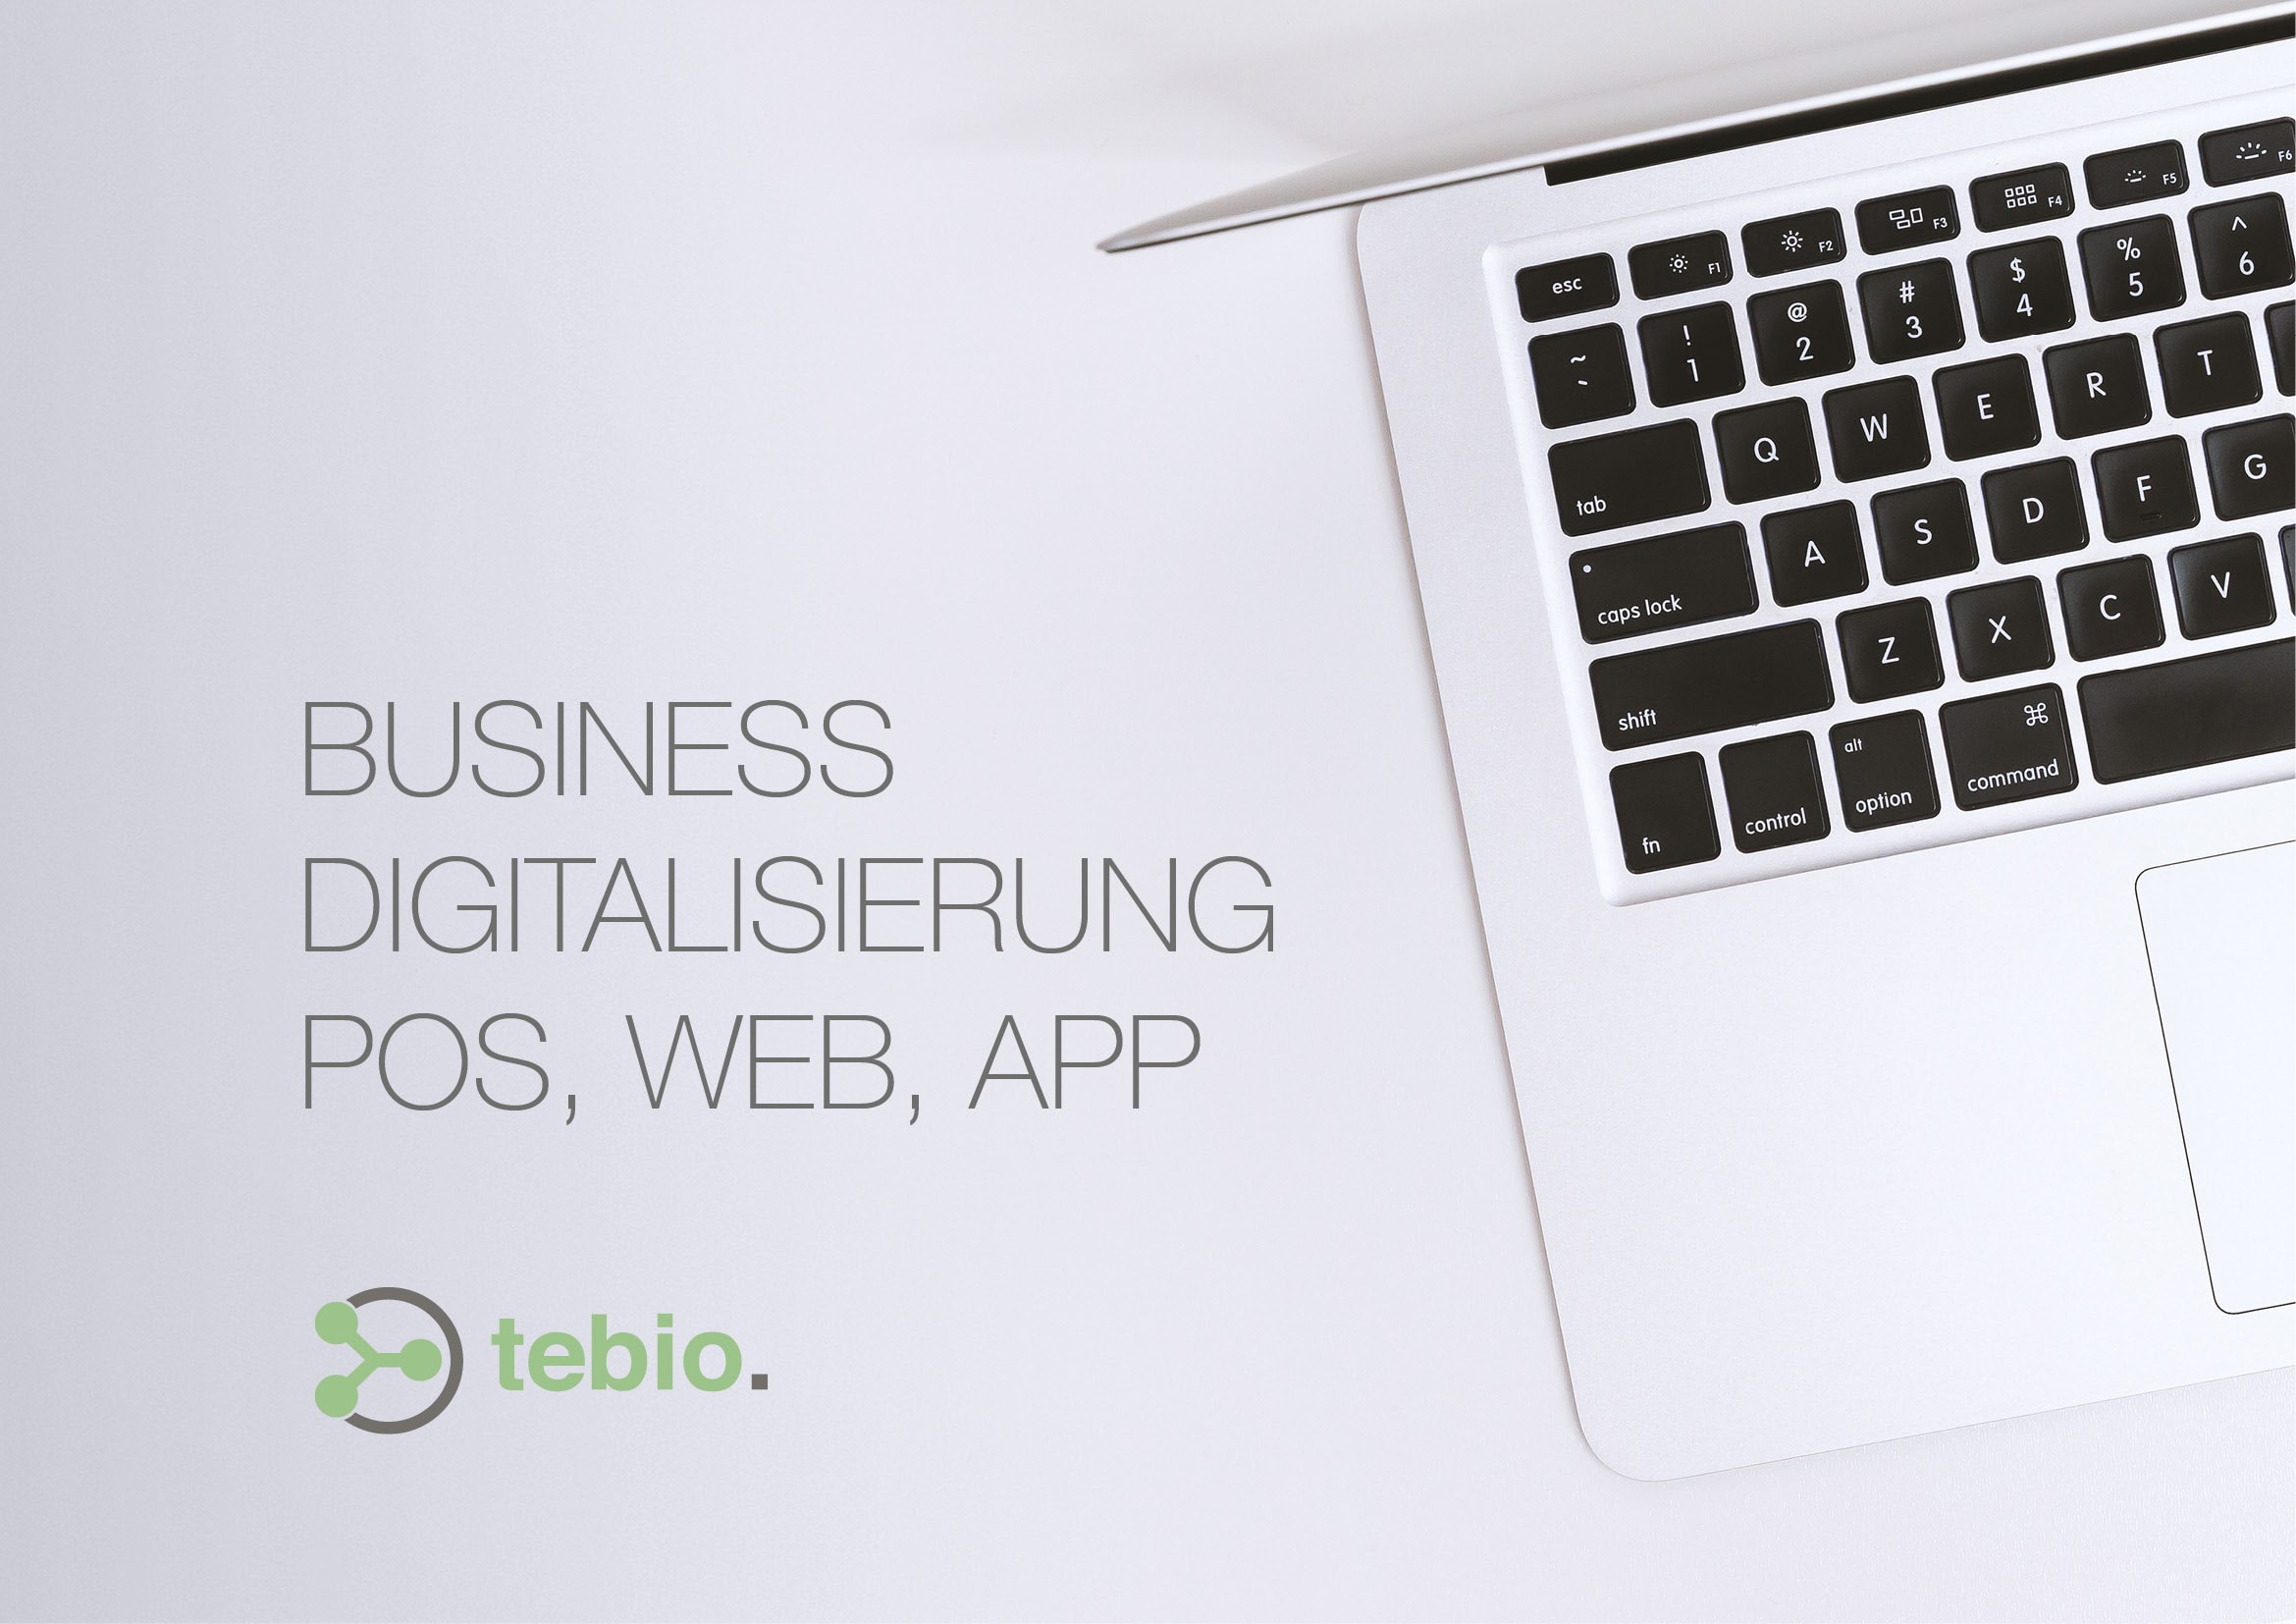 Webdesign-Entwicklung für Tebio, einem Internetportal für Business Digitalisierung POS, Web und APP durch Webdesigner Ronald Wissler